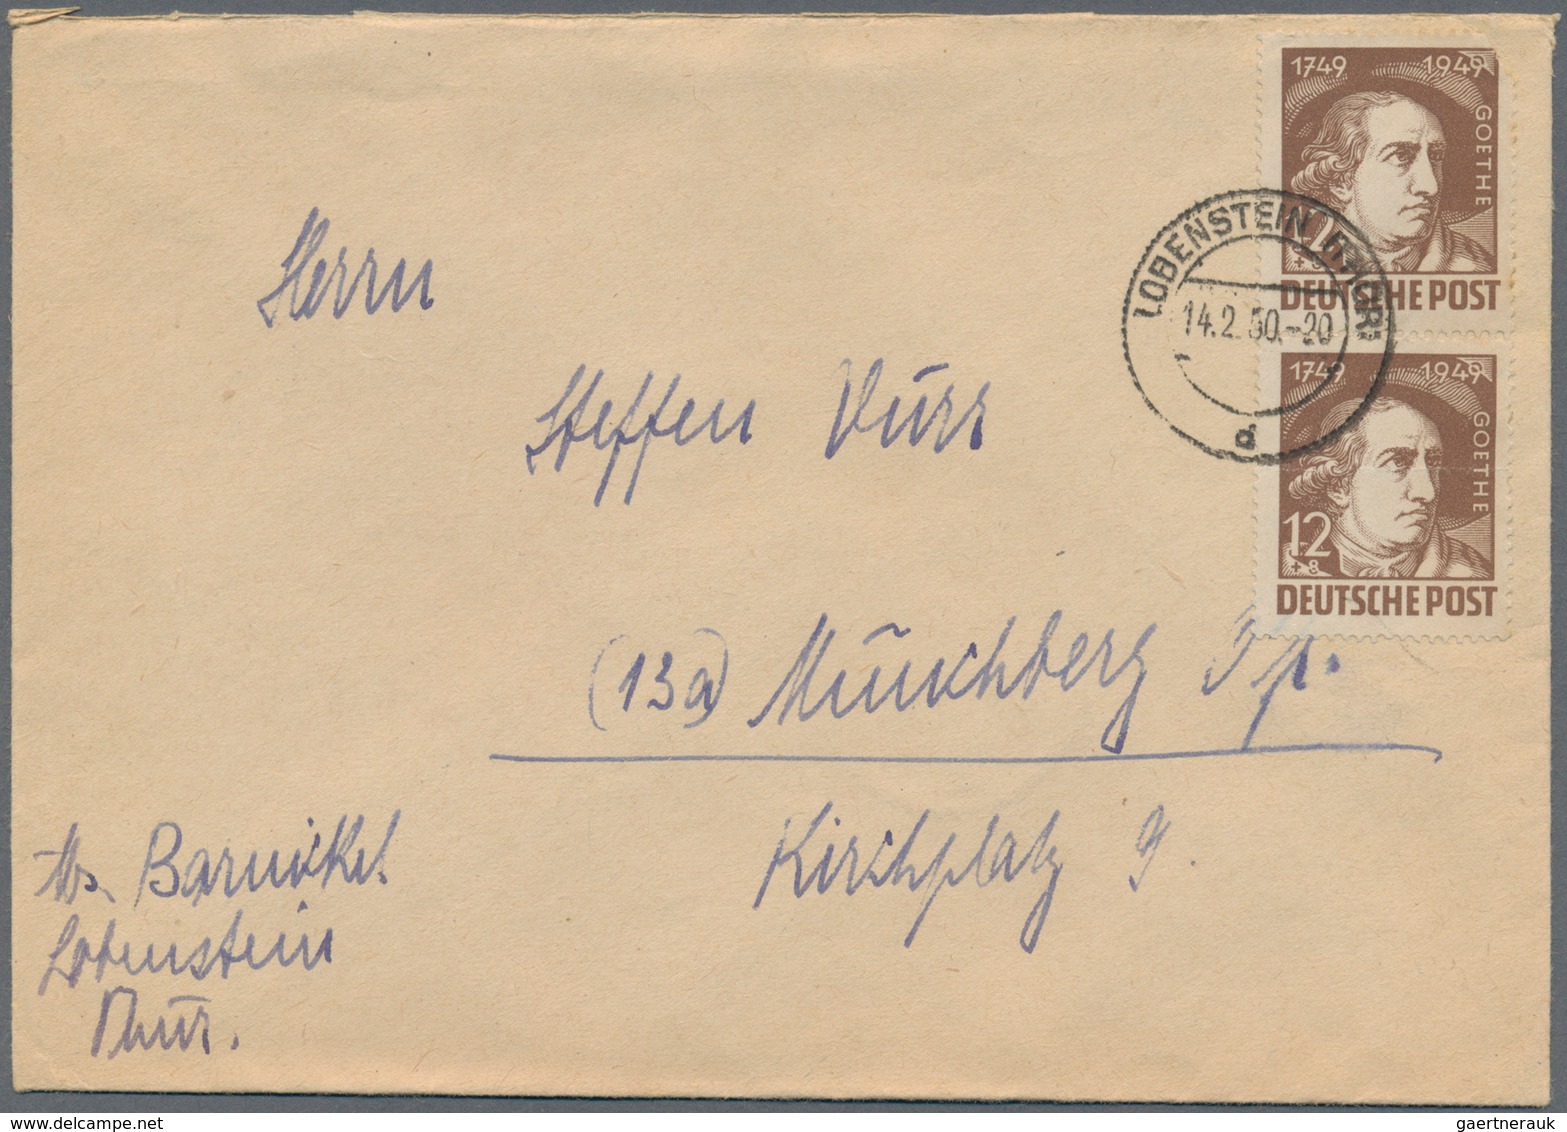 DDR: 1949/1961, vielseitiger Posten von ca. 380 Briefen und Karten aus alter Familien-Korrespondenz,